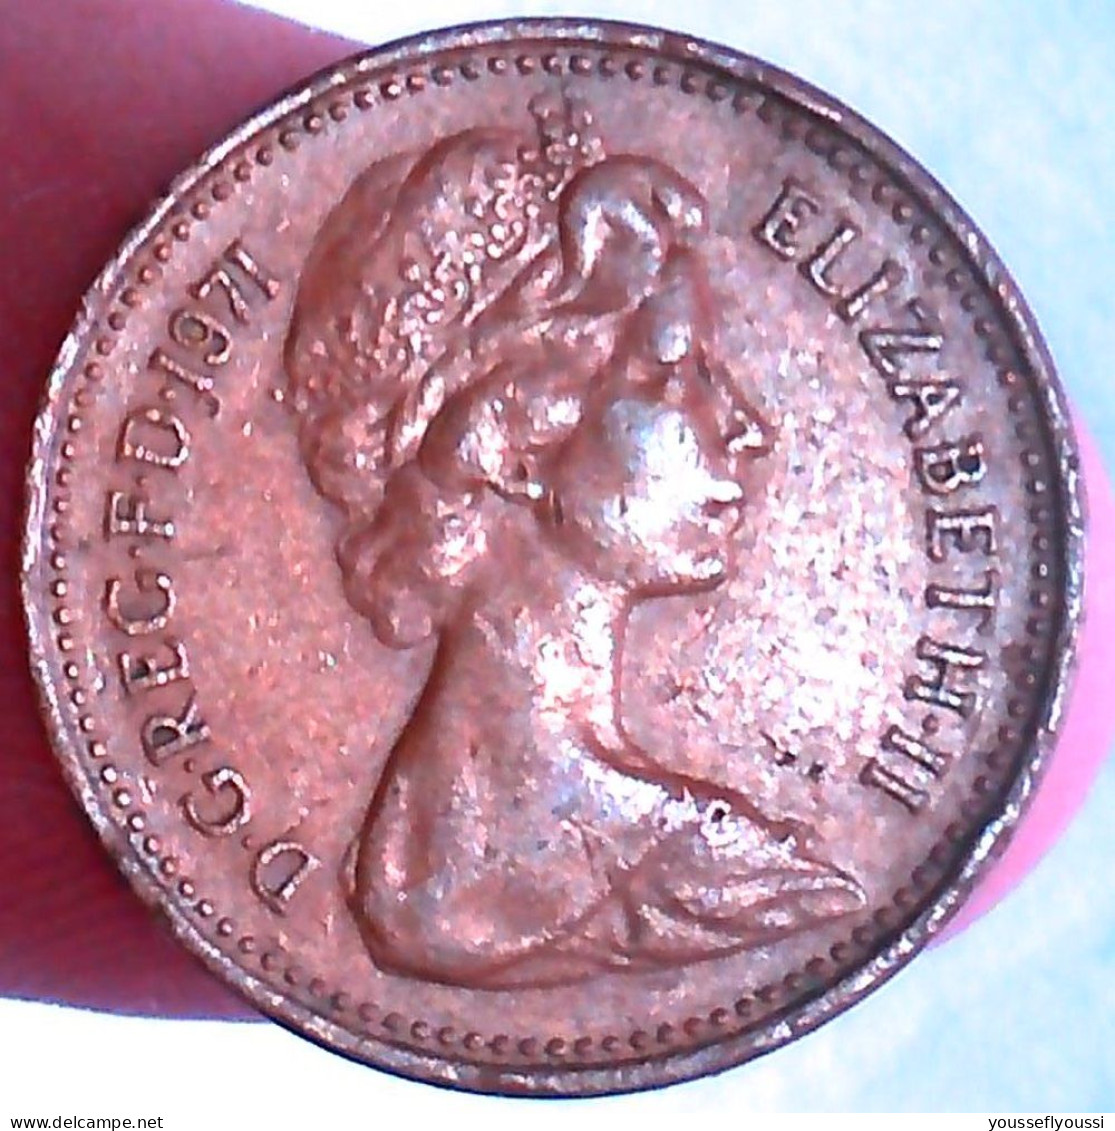 New Penny Del Reino Unido 1971 - D. 1 Penny